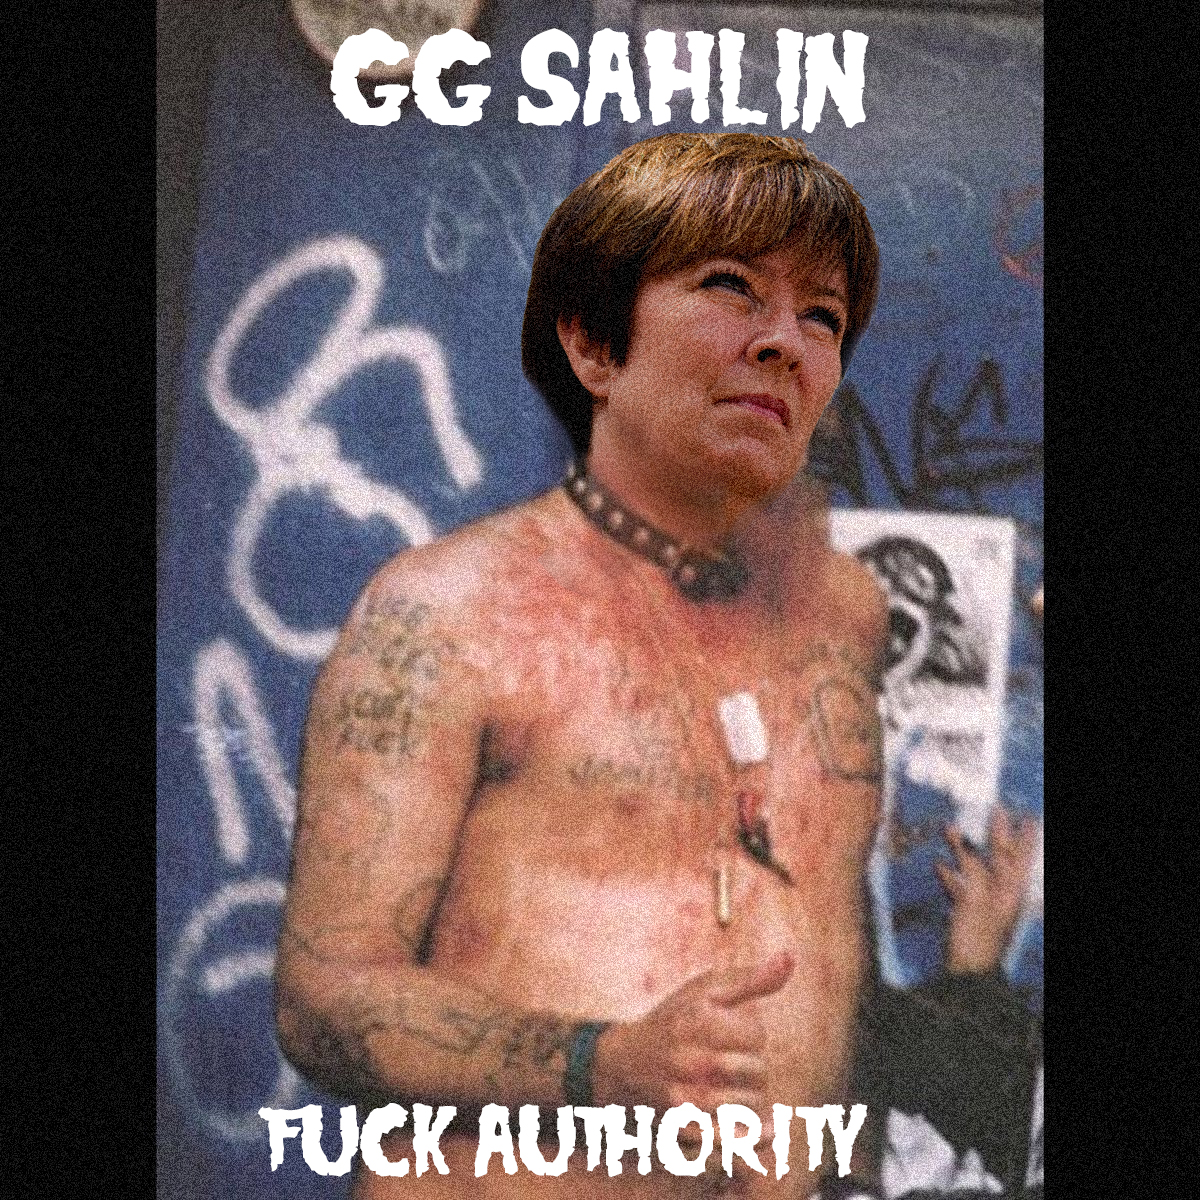 GG-Sahlin